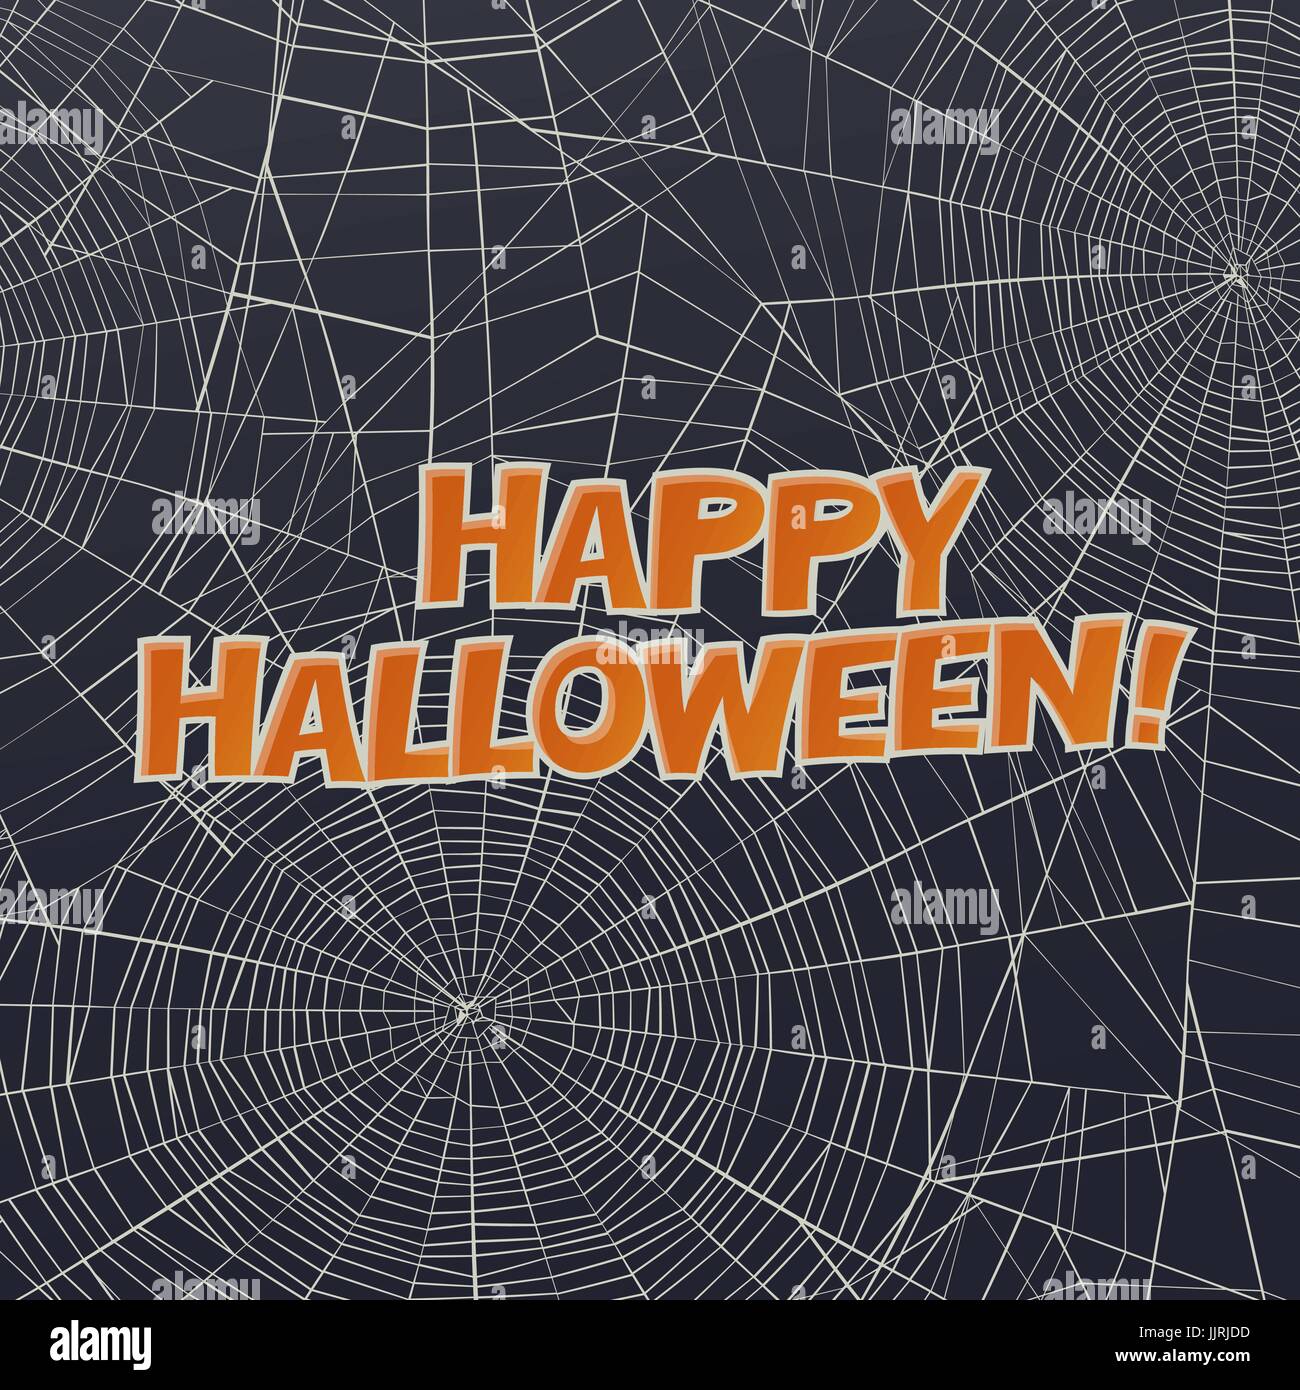 Halloween-Vektor-Karte oder Hintergrund. Spinnennetz und Grüße. Vektorgrafiken. Stock Vektor